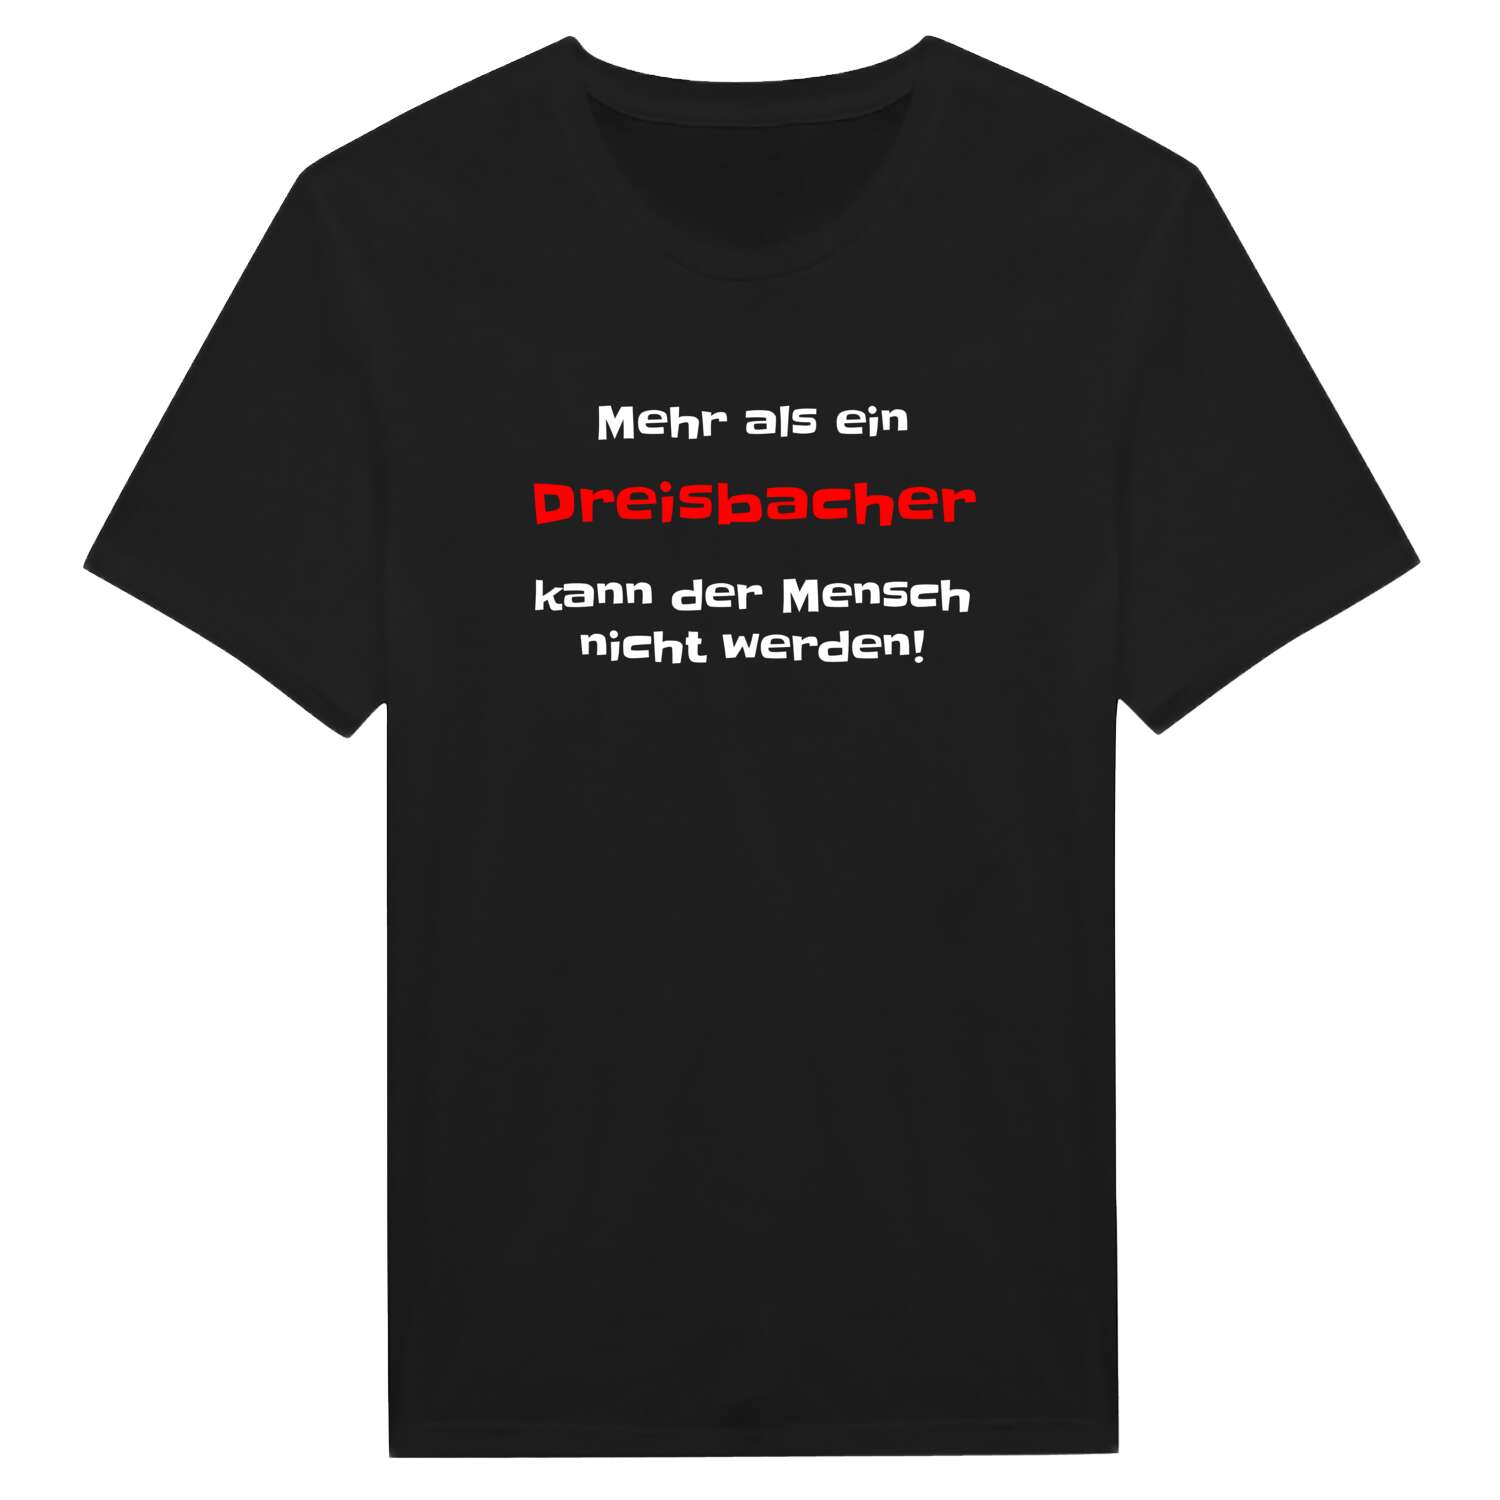 Dreisbach T-Shirt »Mehr als ein«